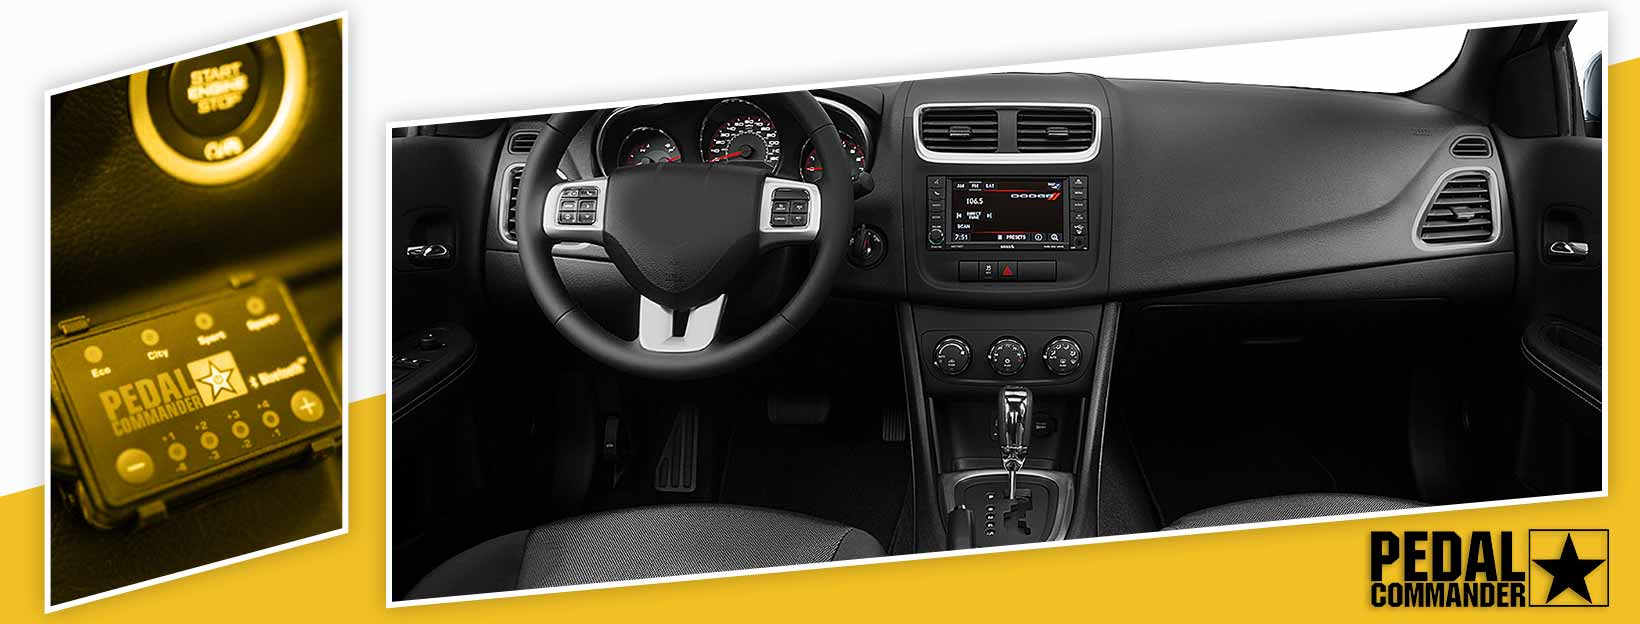 Pedal Commander for Dodge Avenger - interior